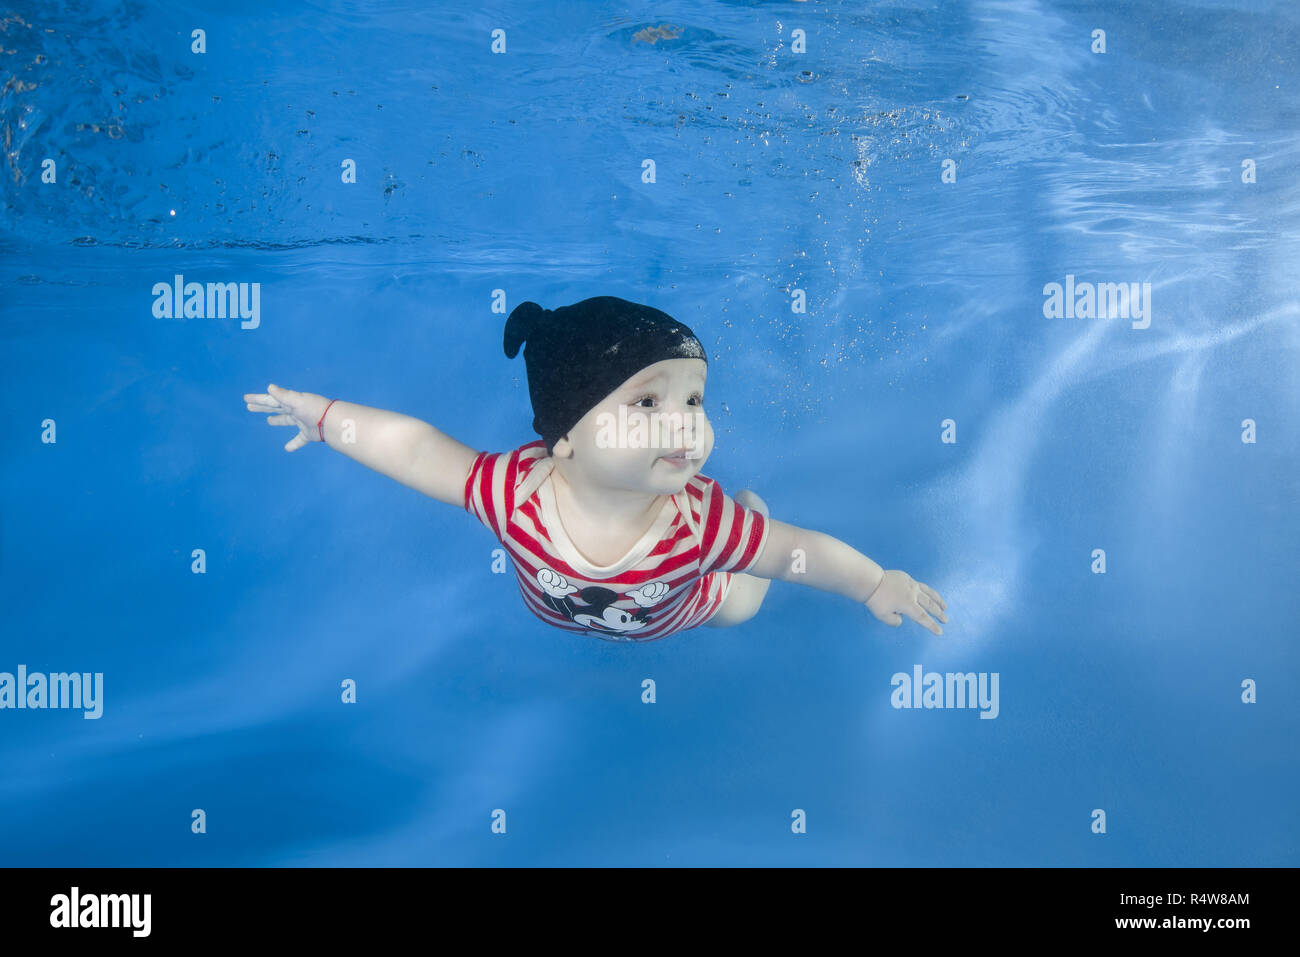 Kleiner Junge in einem gestreiften Anzug Schwimmen unter Wasser im  Schwimmbad auf einem blauen Wasser Hintergrund. Gesunde Familie Lifestyle  und Kinder Wassersport Aktivitäten Stockfotografie - Alamy